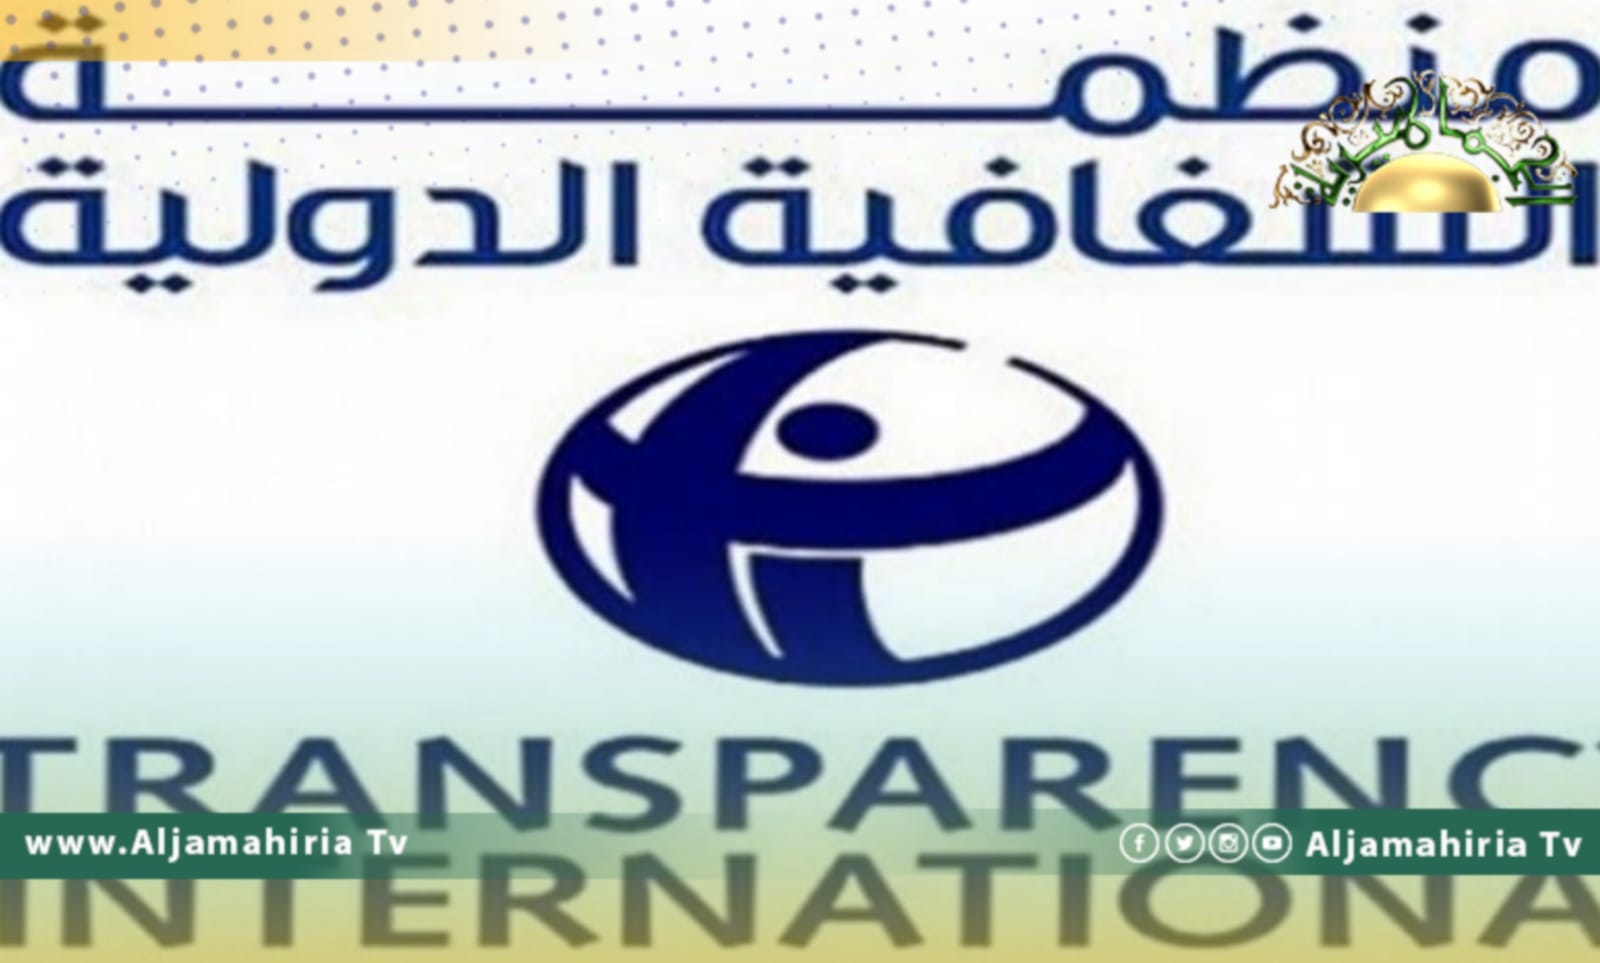 منظمة الشفافية الدولية